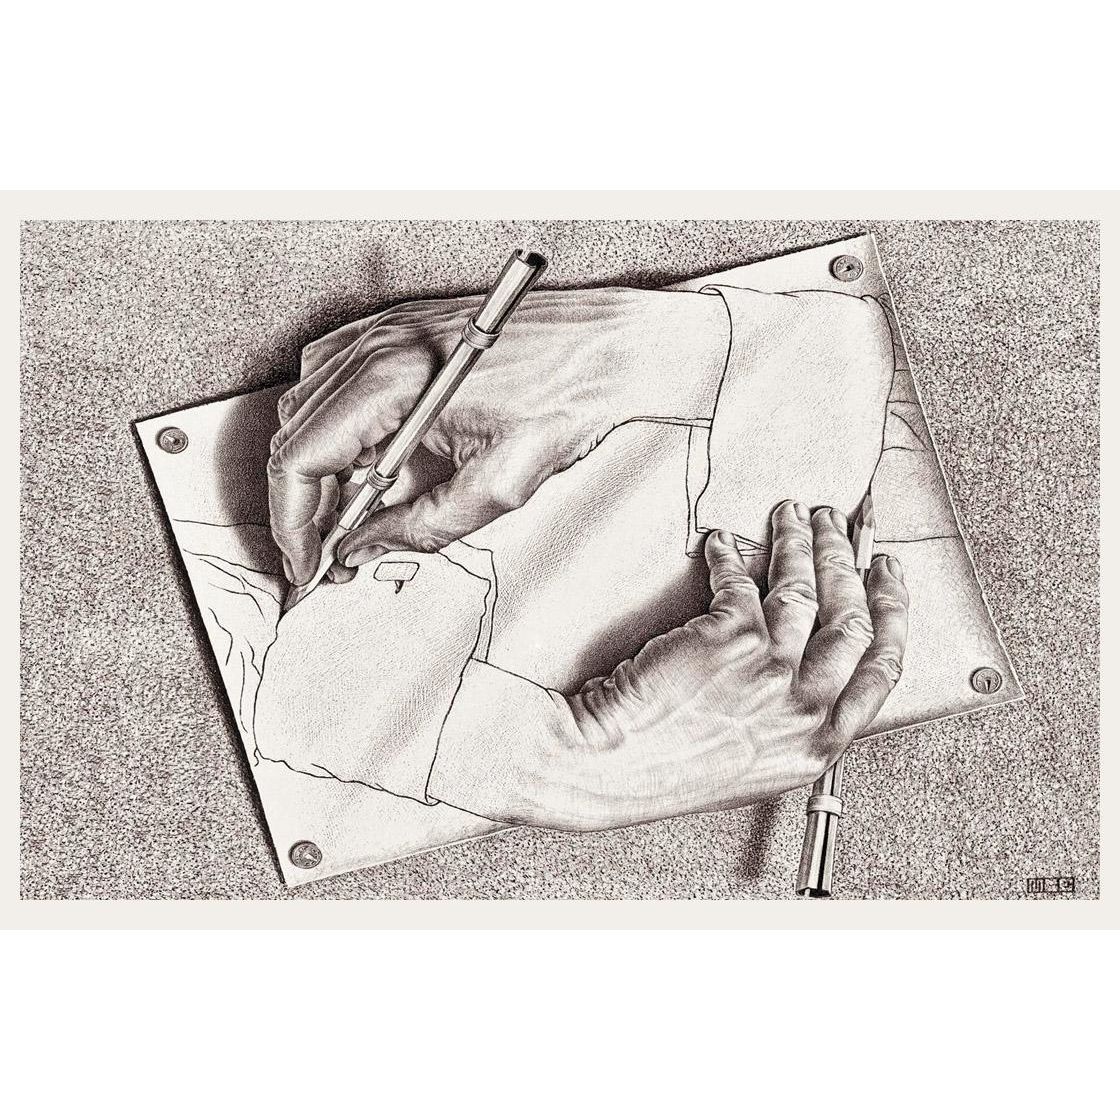 Maurits Cornelis Escher. Drawing Hands. 1948